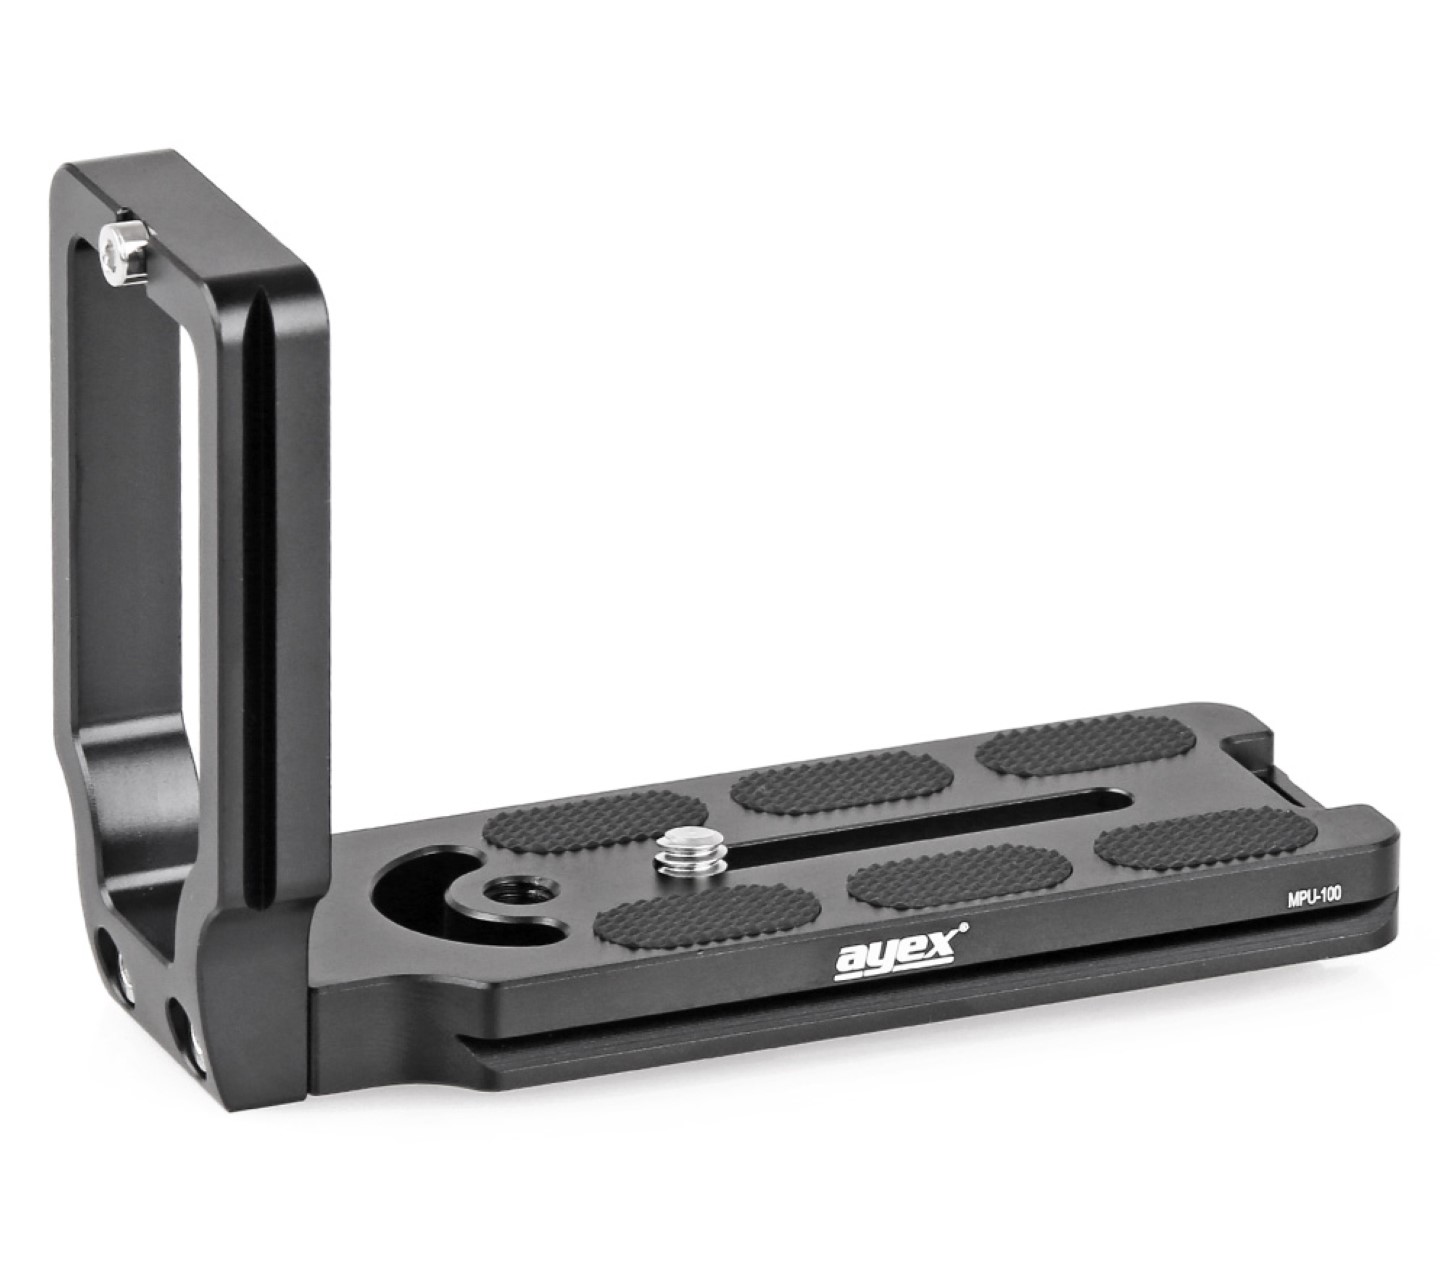 L-förmige Universal Schnellwechselplatte für Arca-Swiss Standard, ayex MPU-100